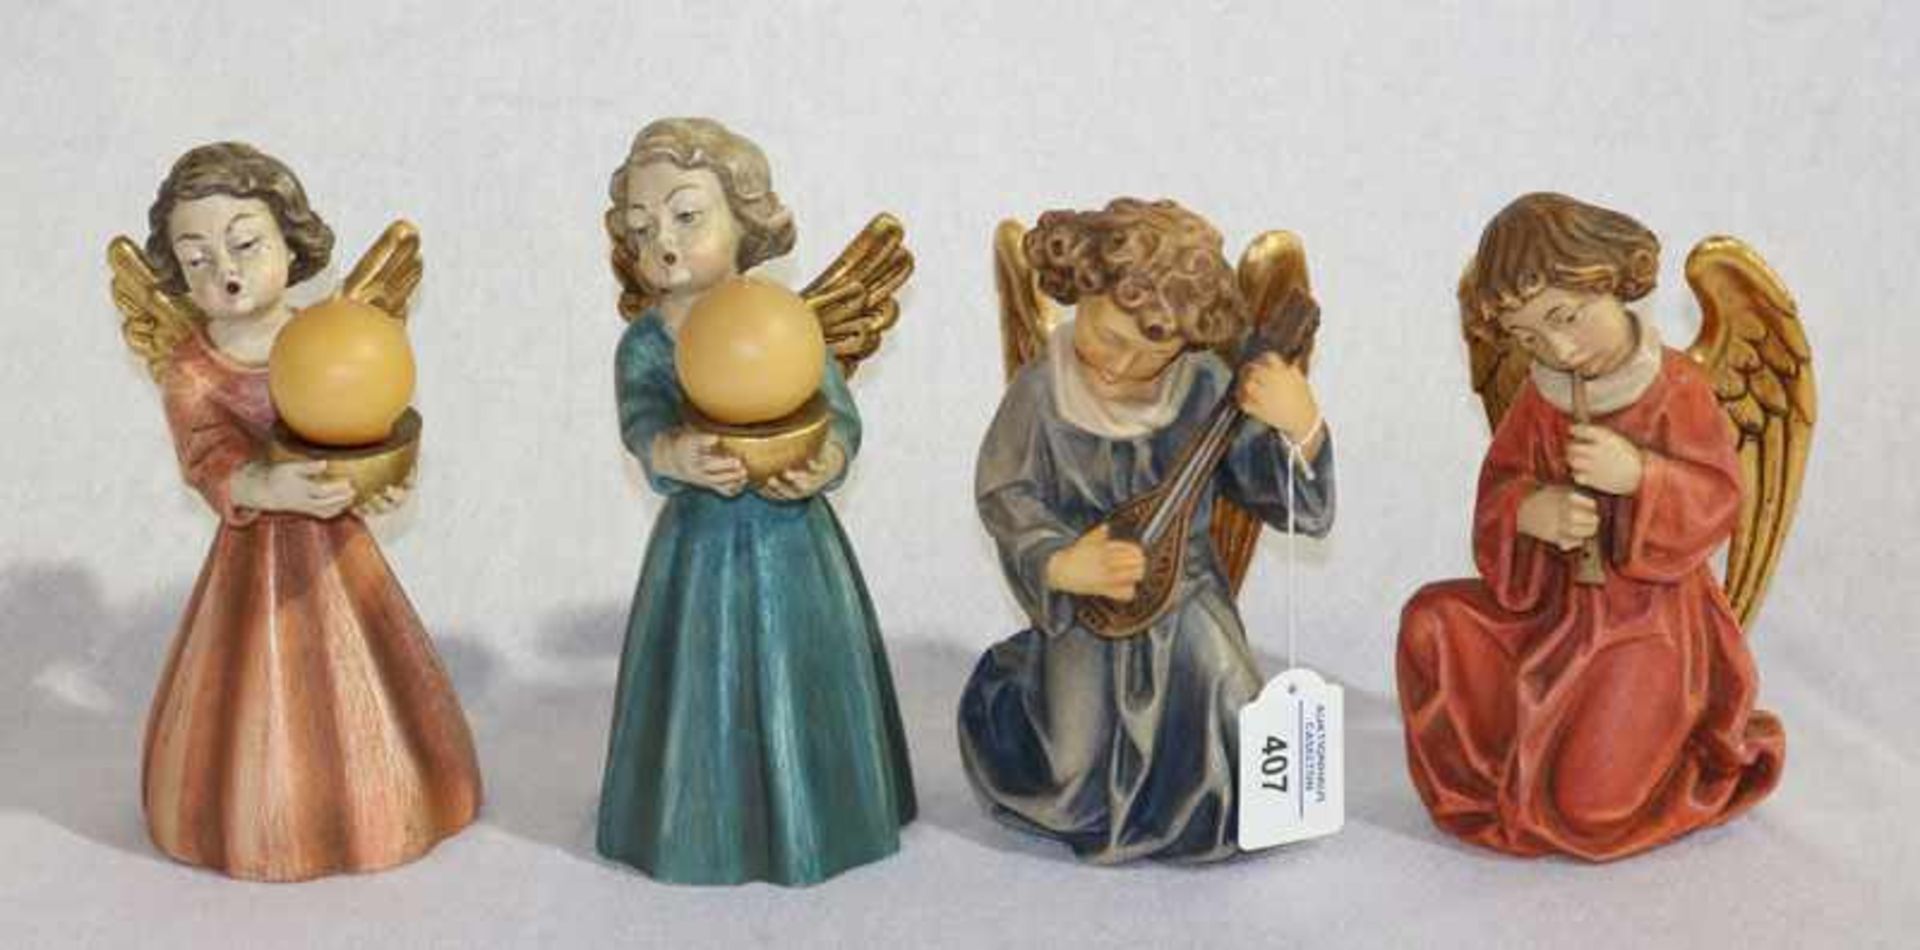 Holz Skulpturen: 2 Leuchterengel, H 19/21 cm, und 2 musizierende Engel, H 18/20 cm, alle farbig